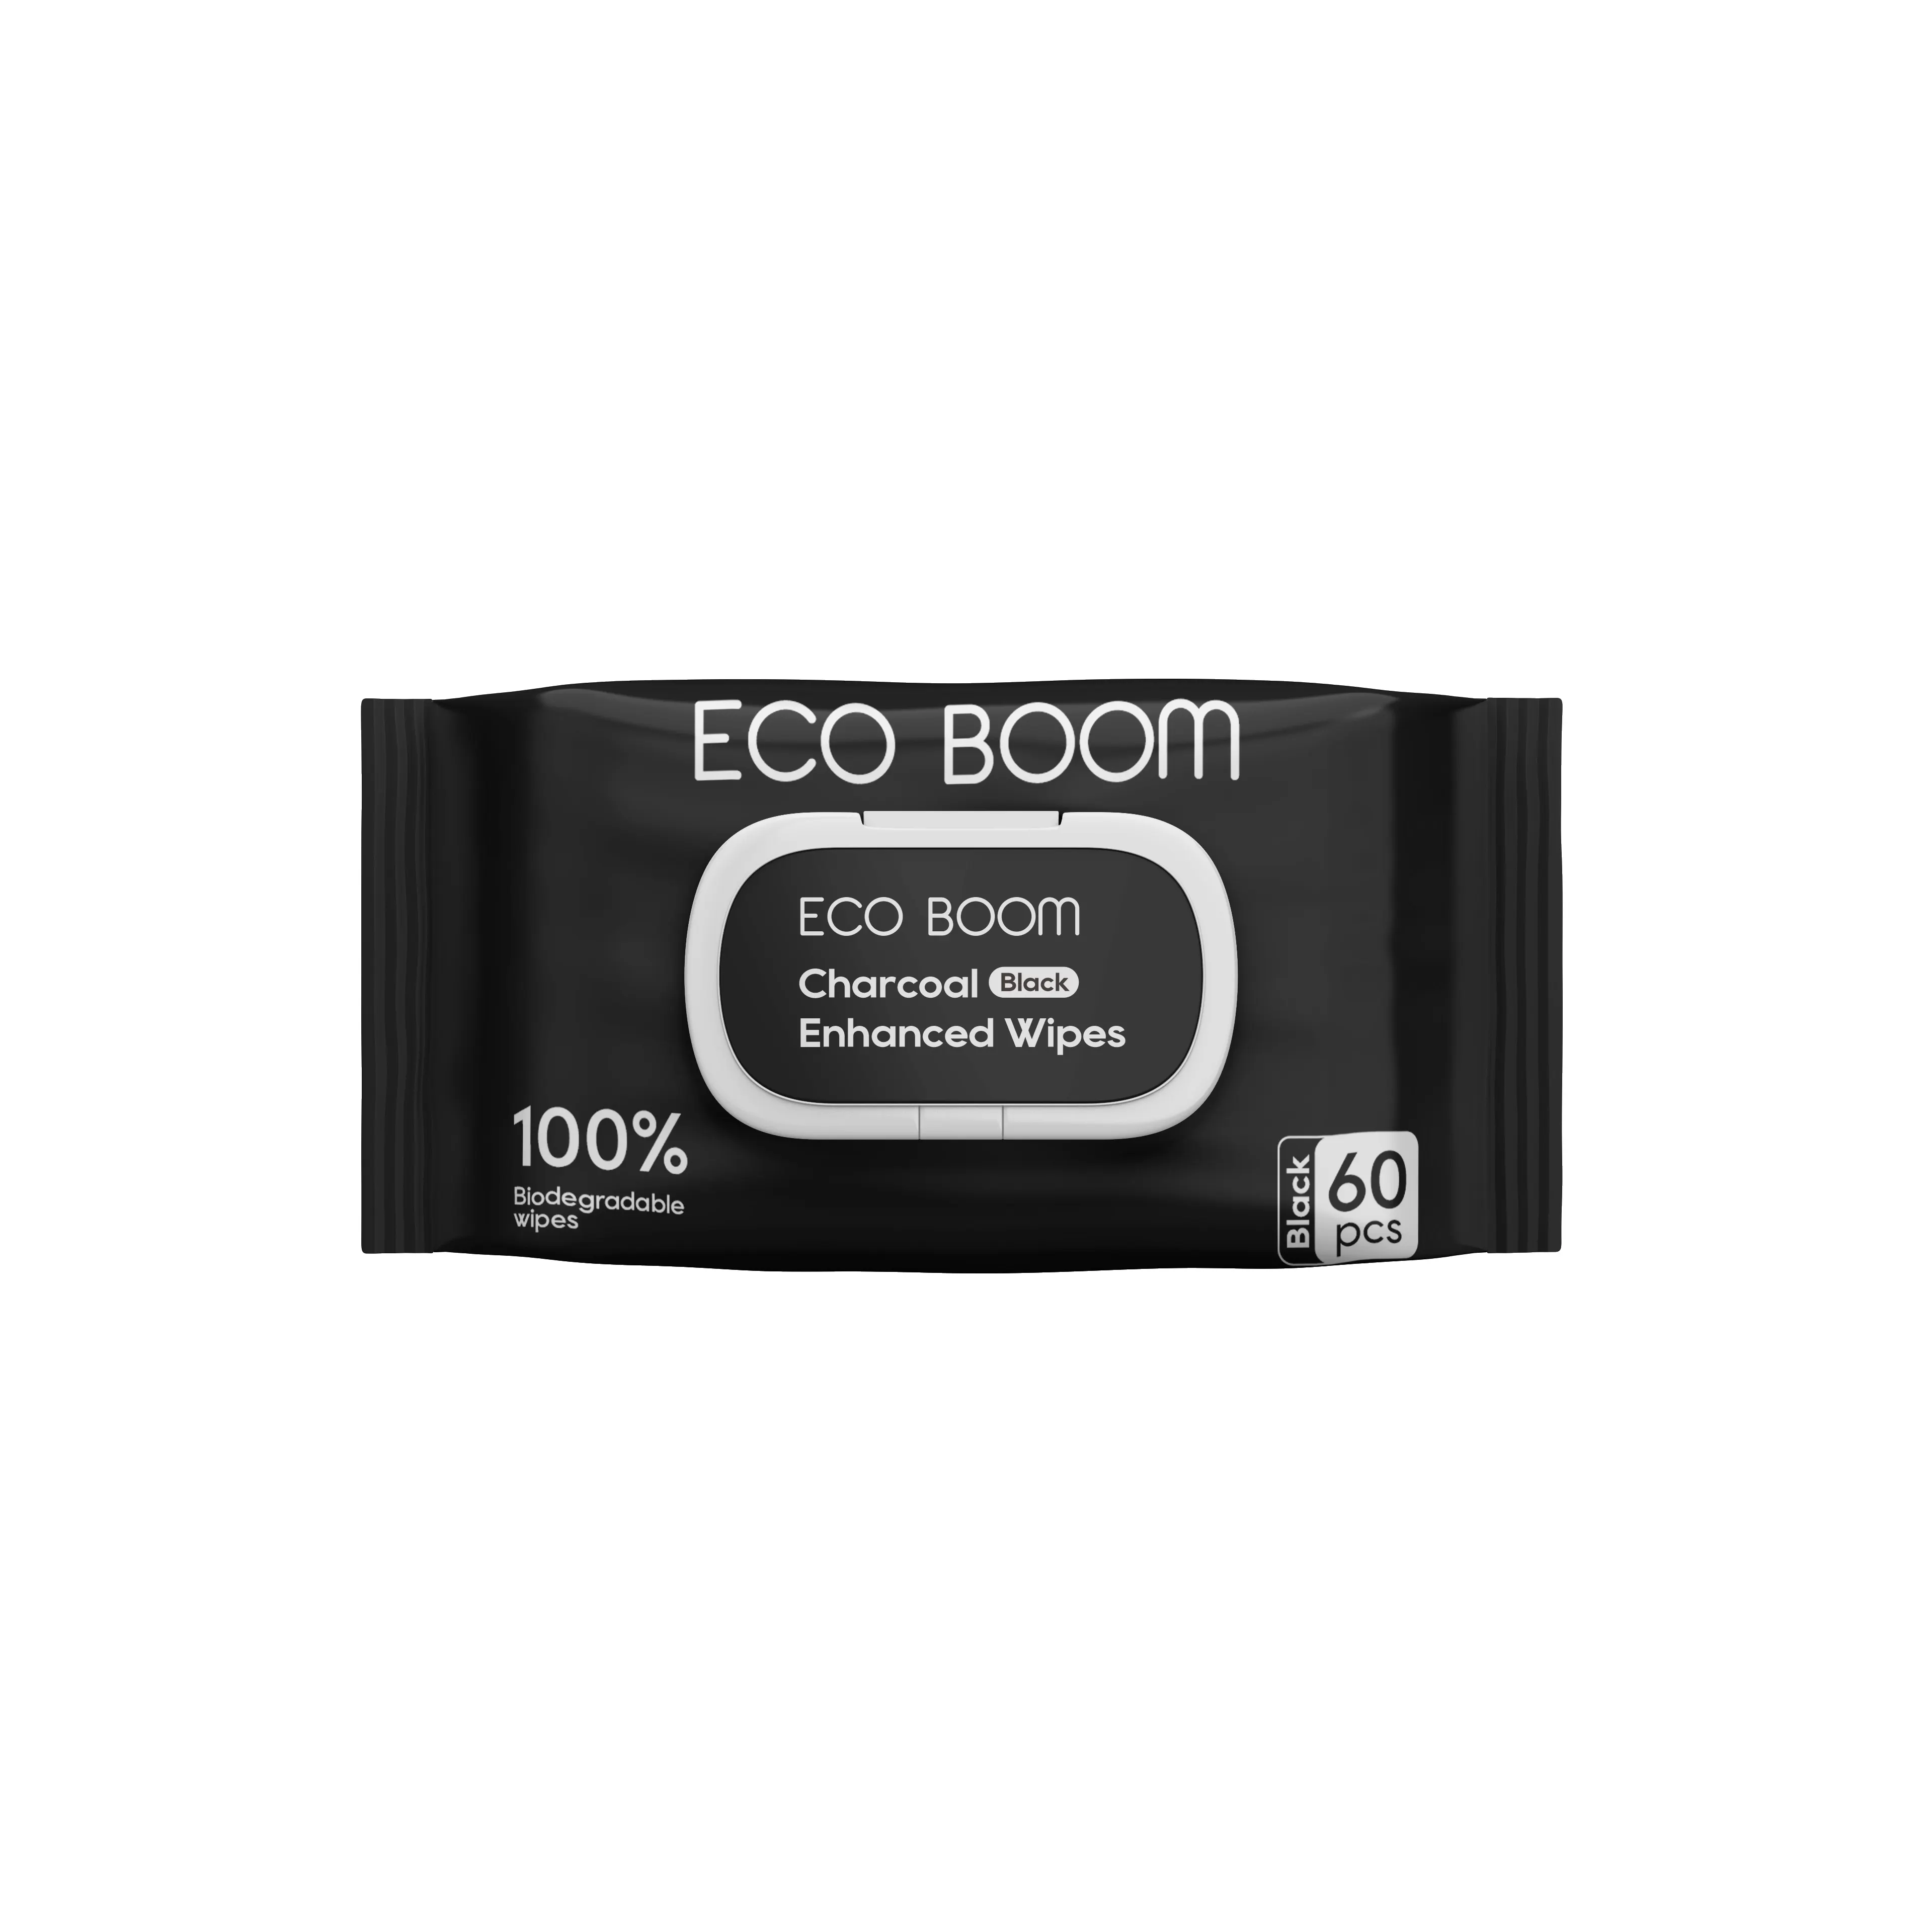 ECO BOOM kain sensitif bambu murah tebal kustom organik biodegradable tisu basah bayi